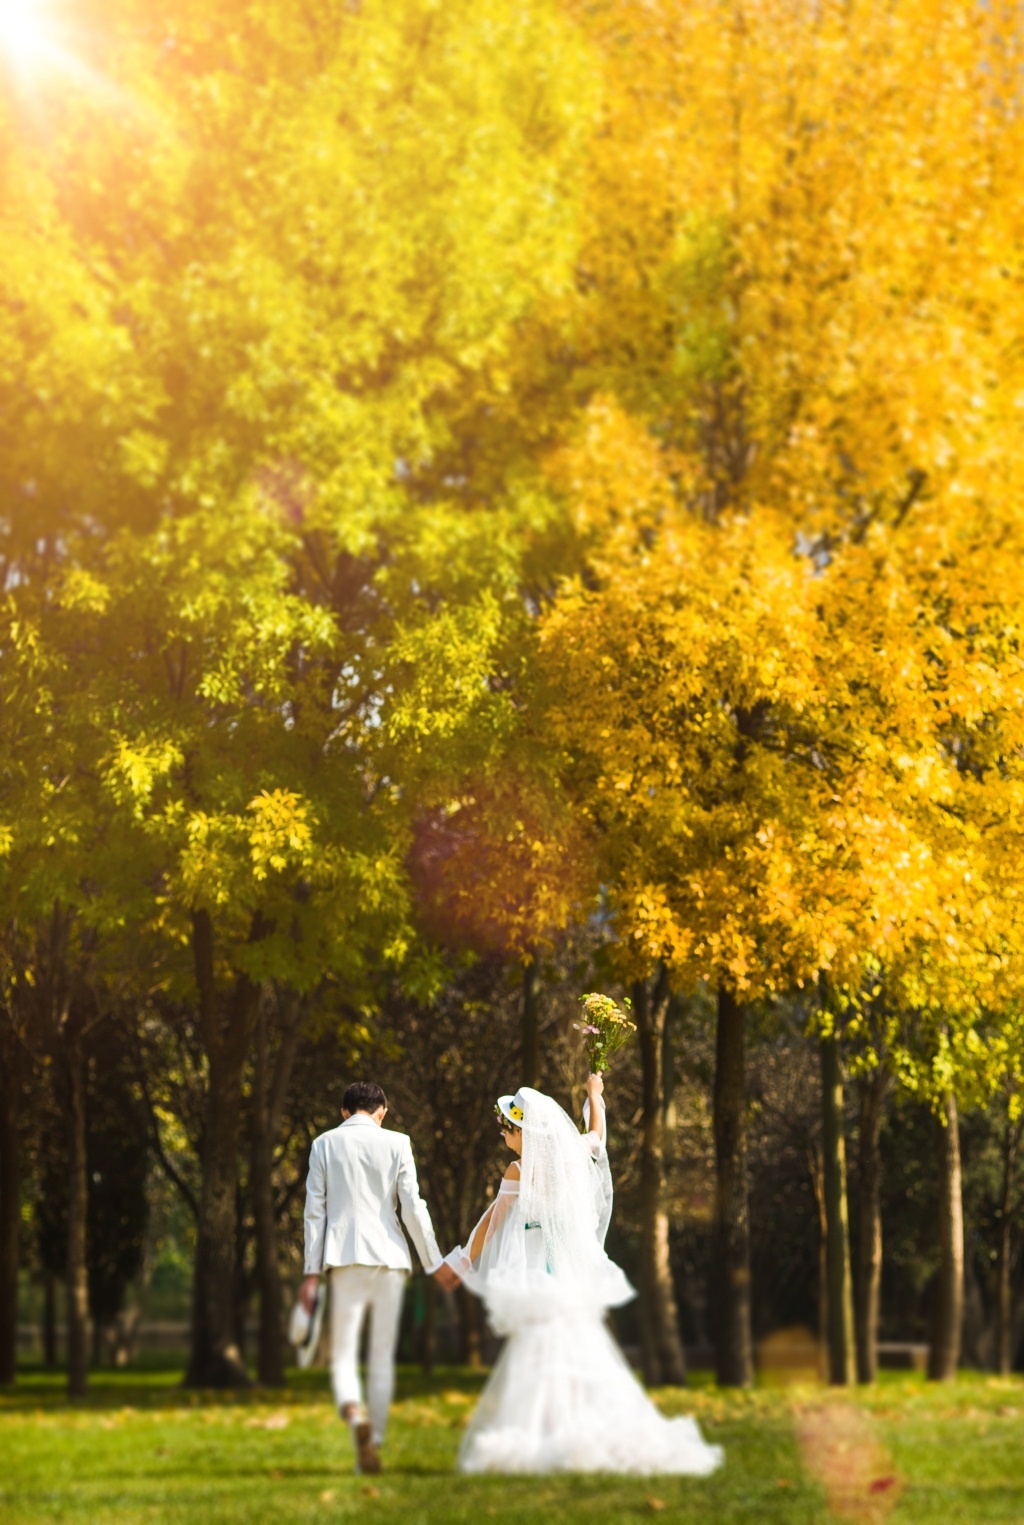 桂林婚纱摄影图片欣赏|桂林婚纱照样片图片